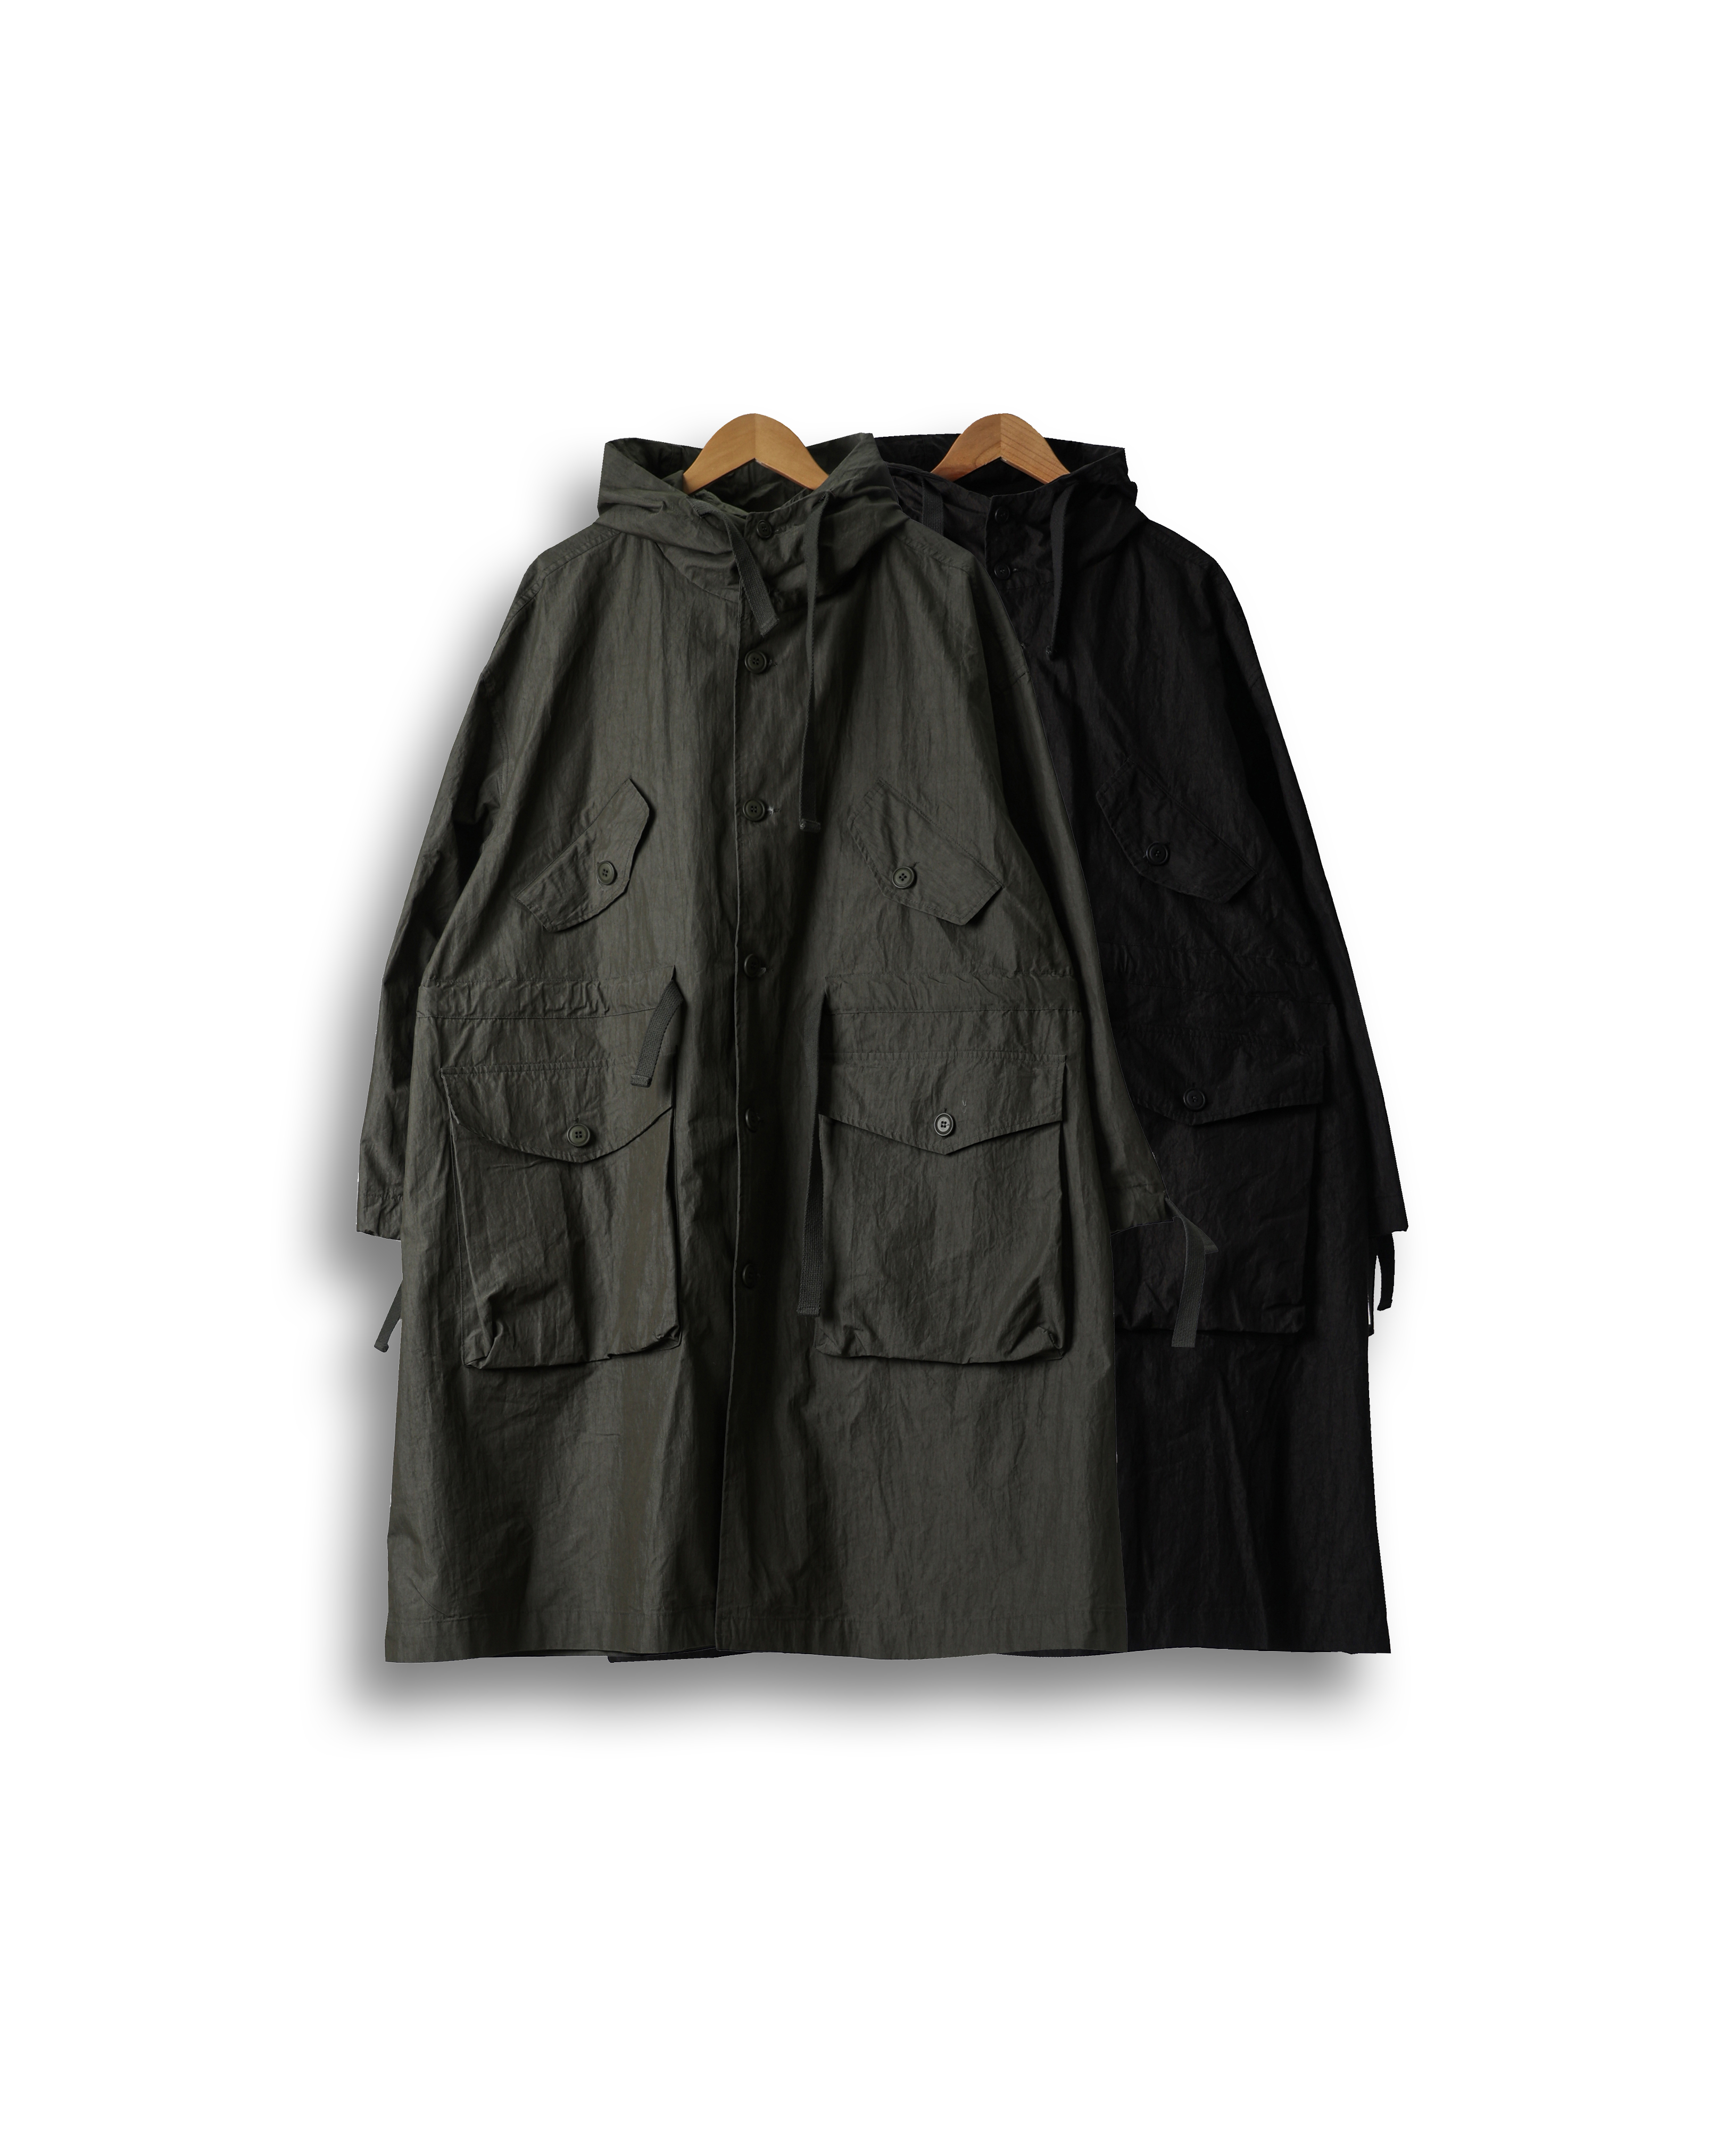 GAUGE Military Hoodied Pocket Parka (Black/Olive)